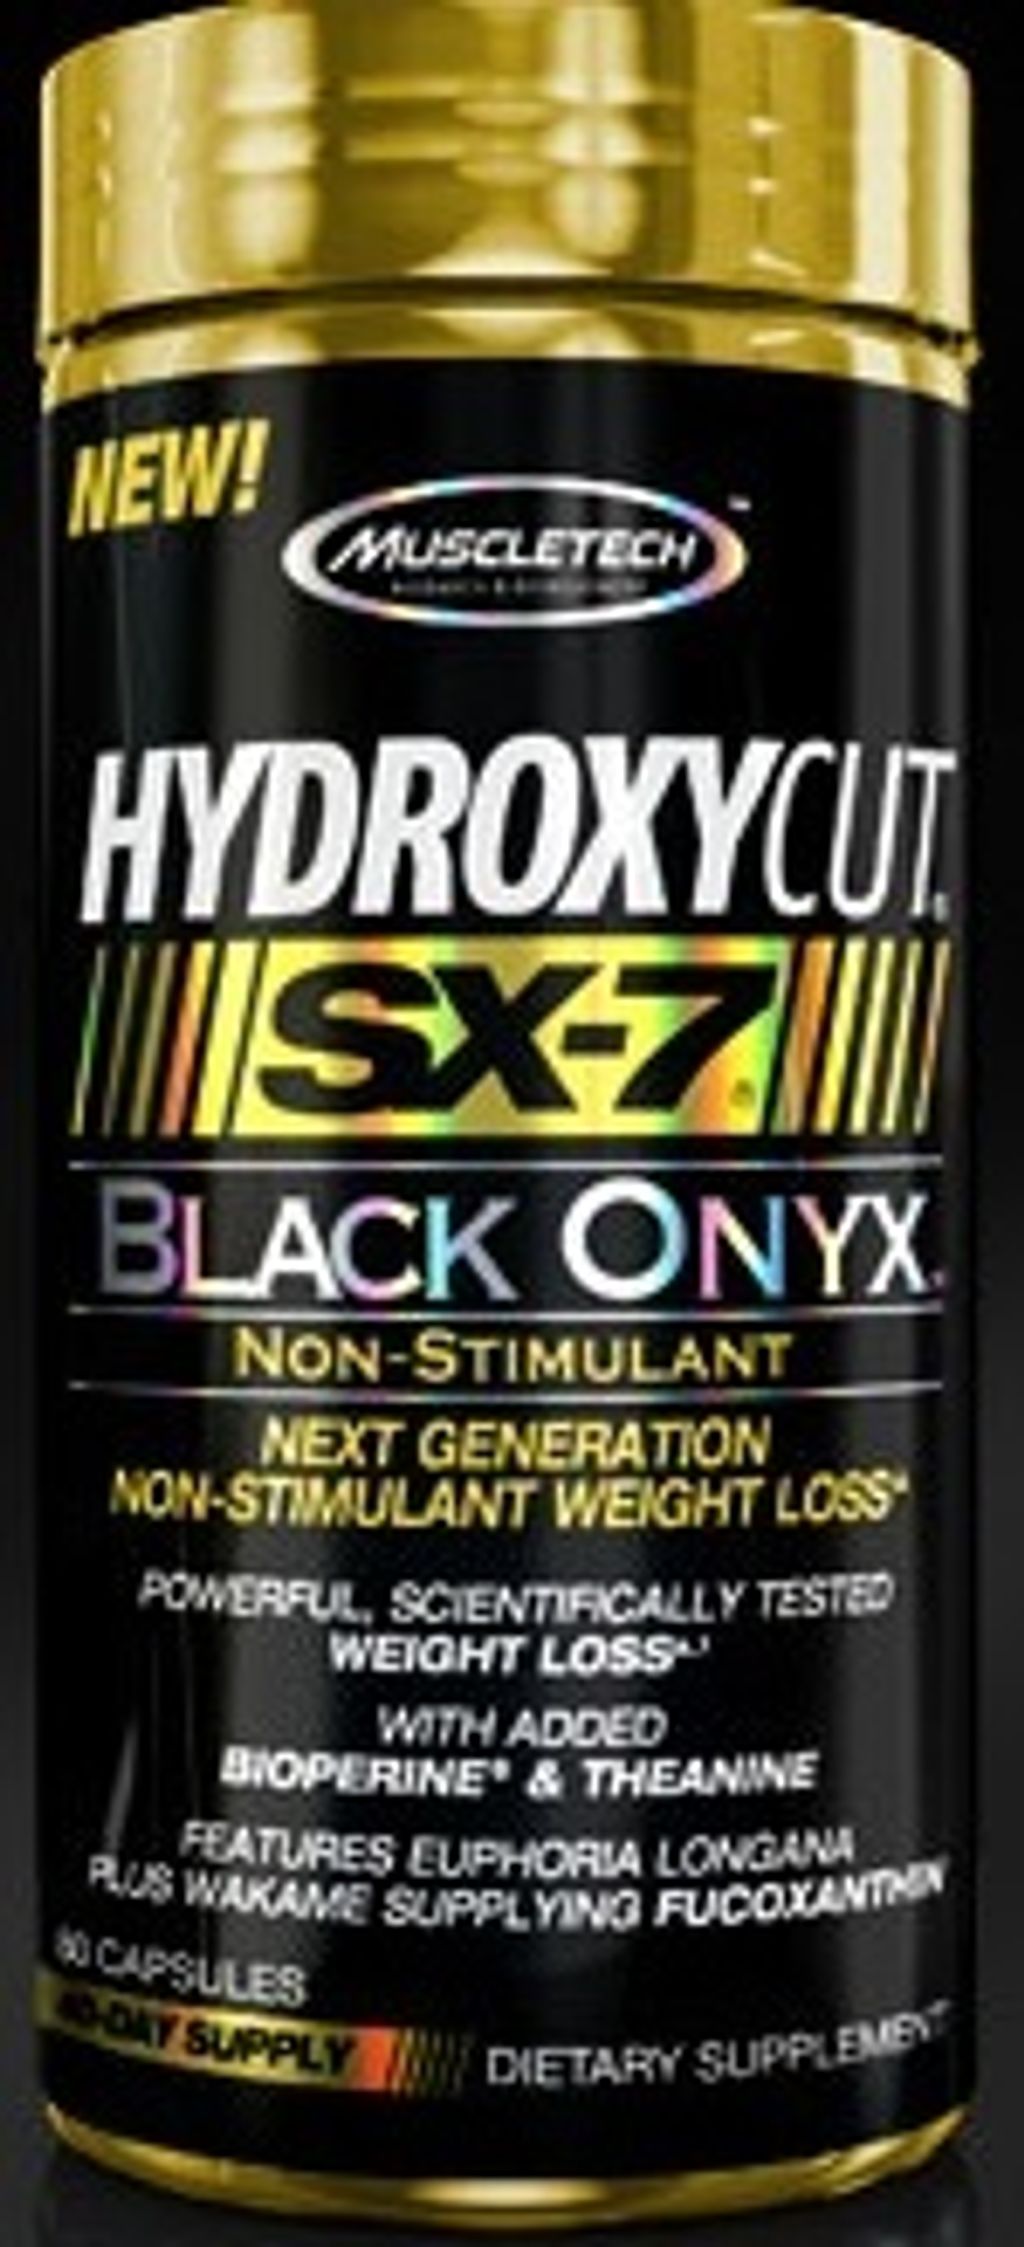 muscletech-black-onyx-hydroxycut-non-stim.jpg